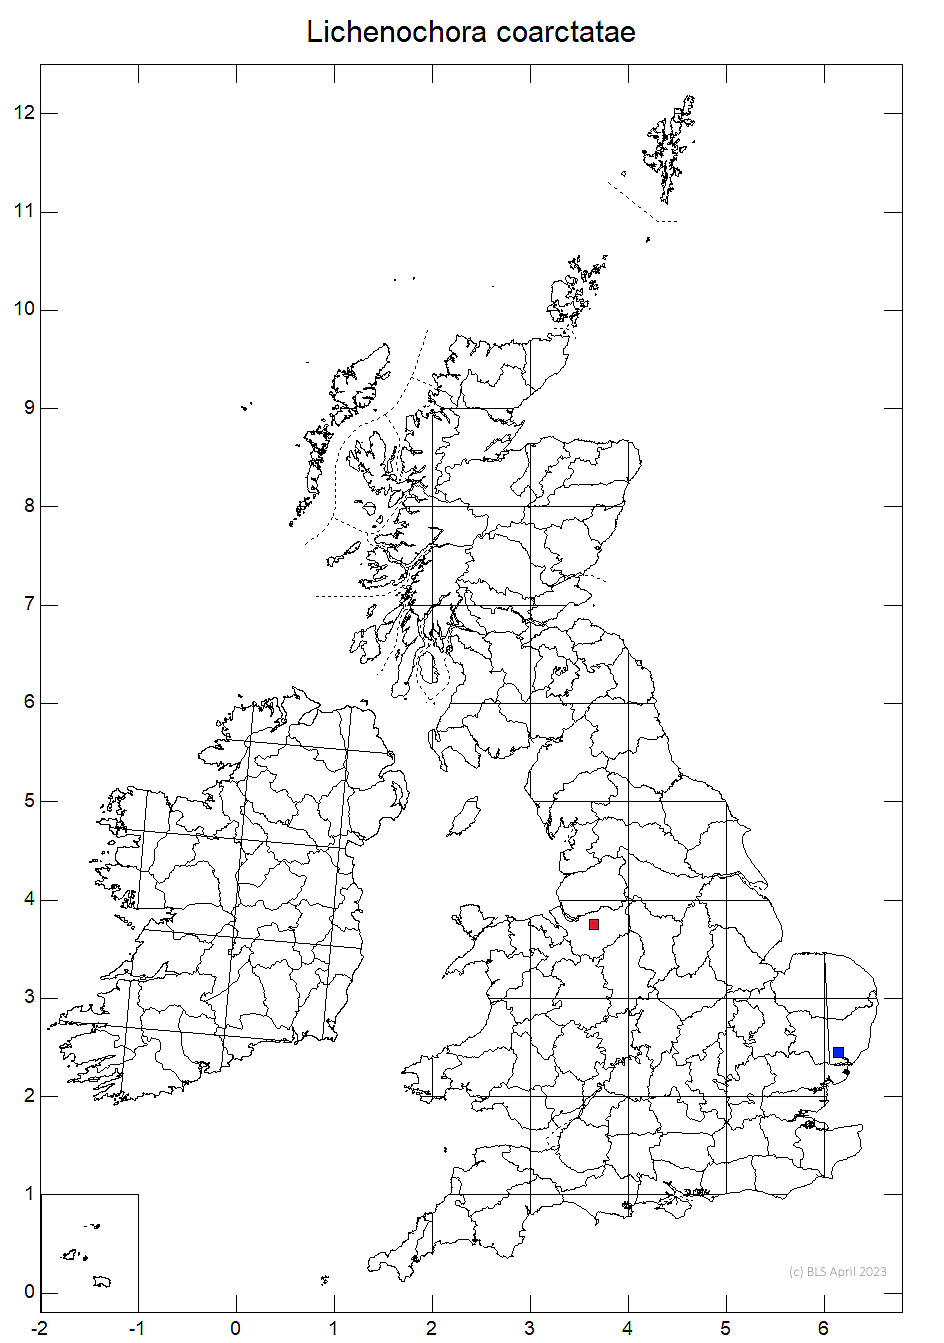 Lichenochora coarctatae 10km sq distribution map